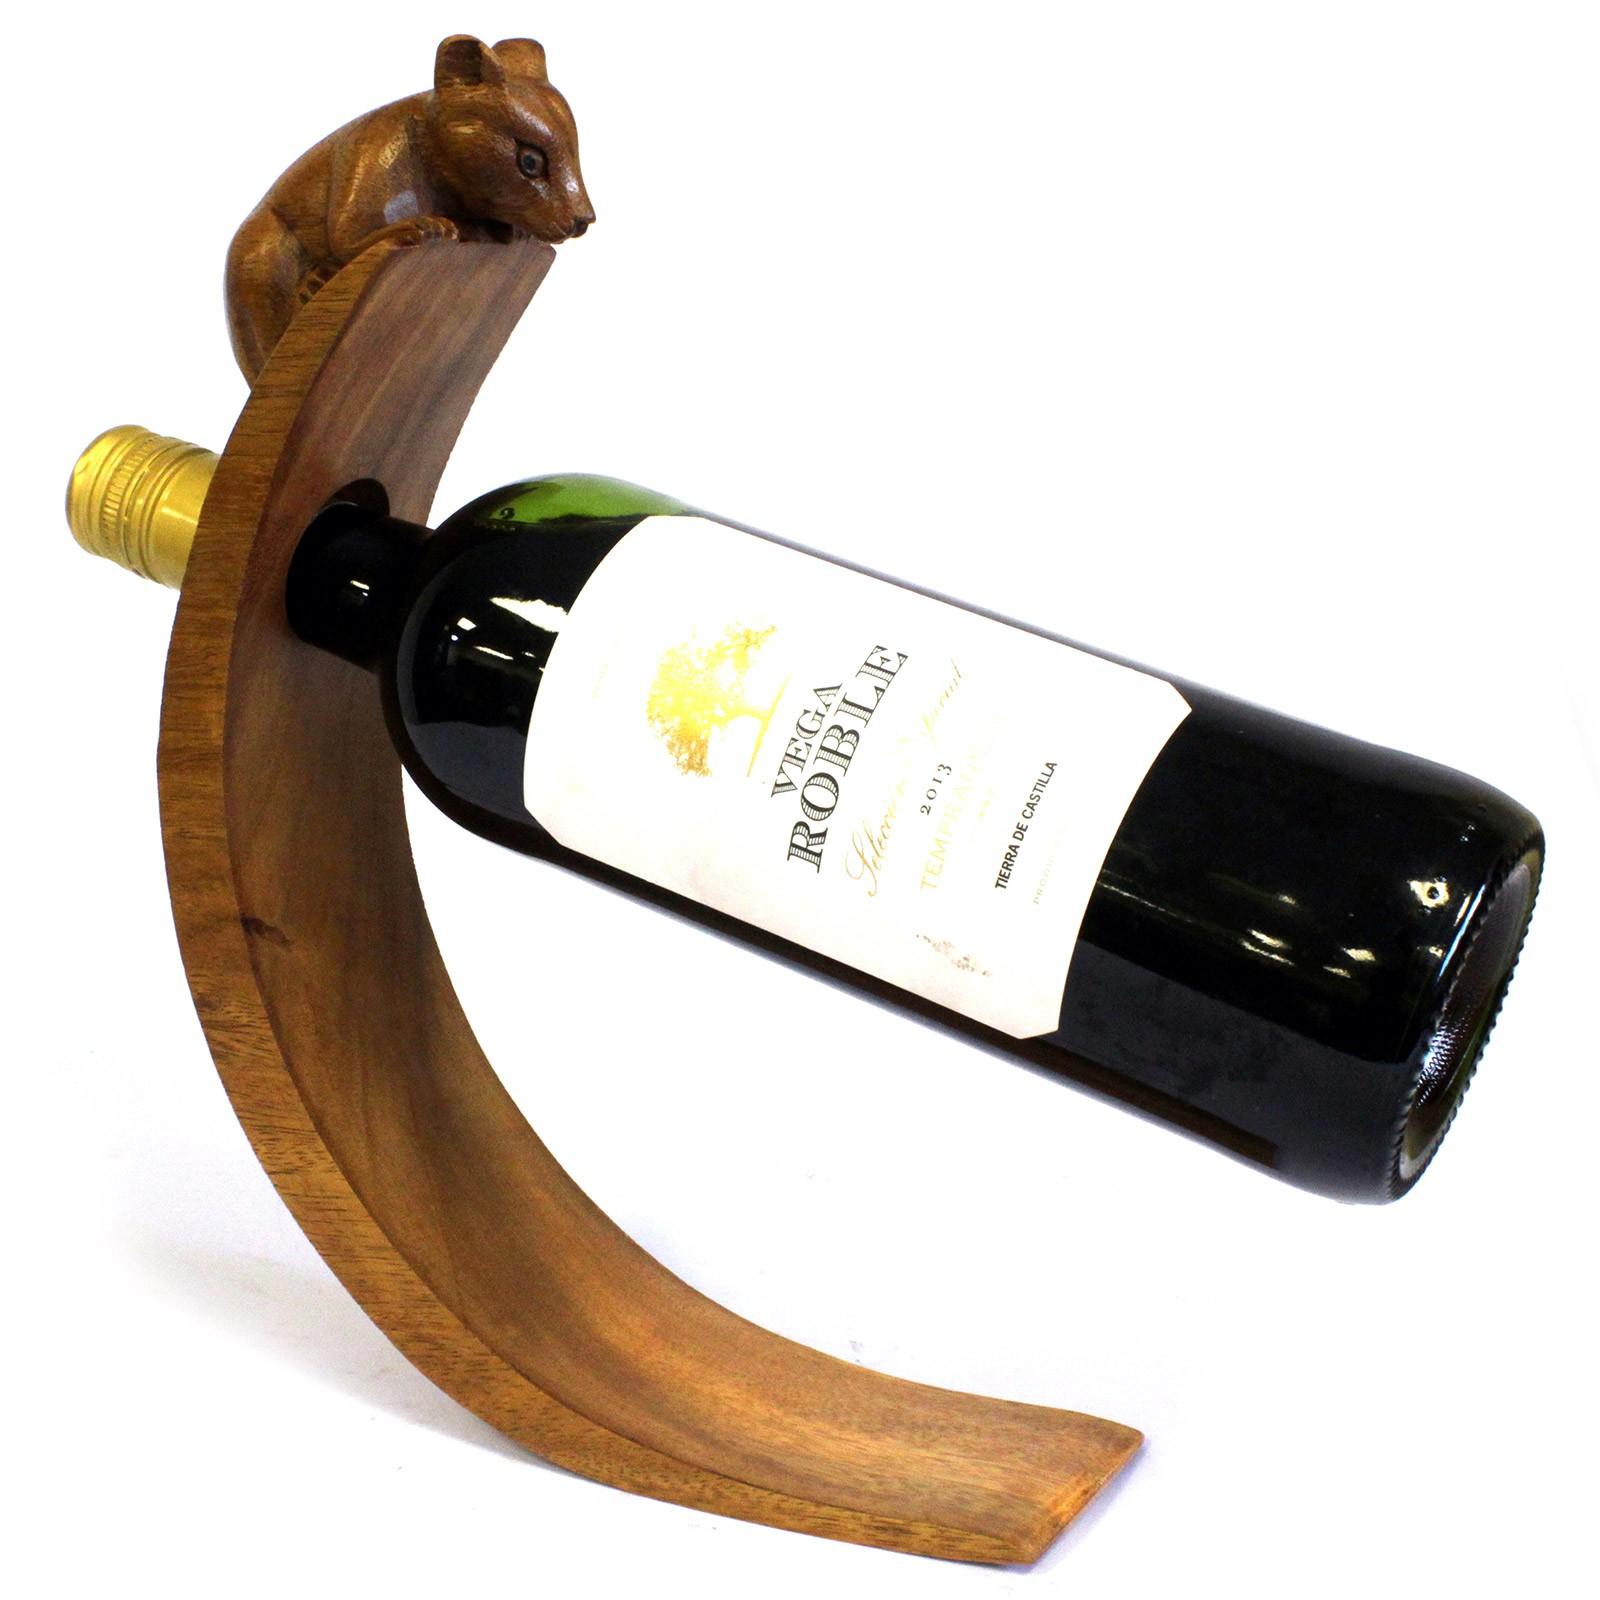 Balance wine bottle holder mouse